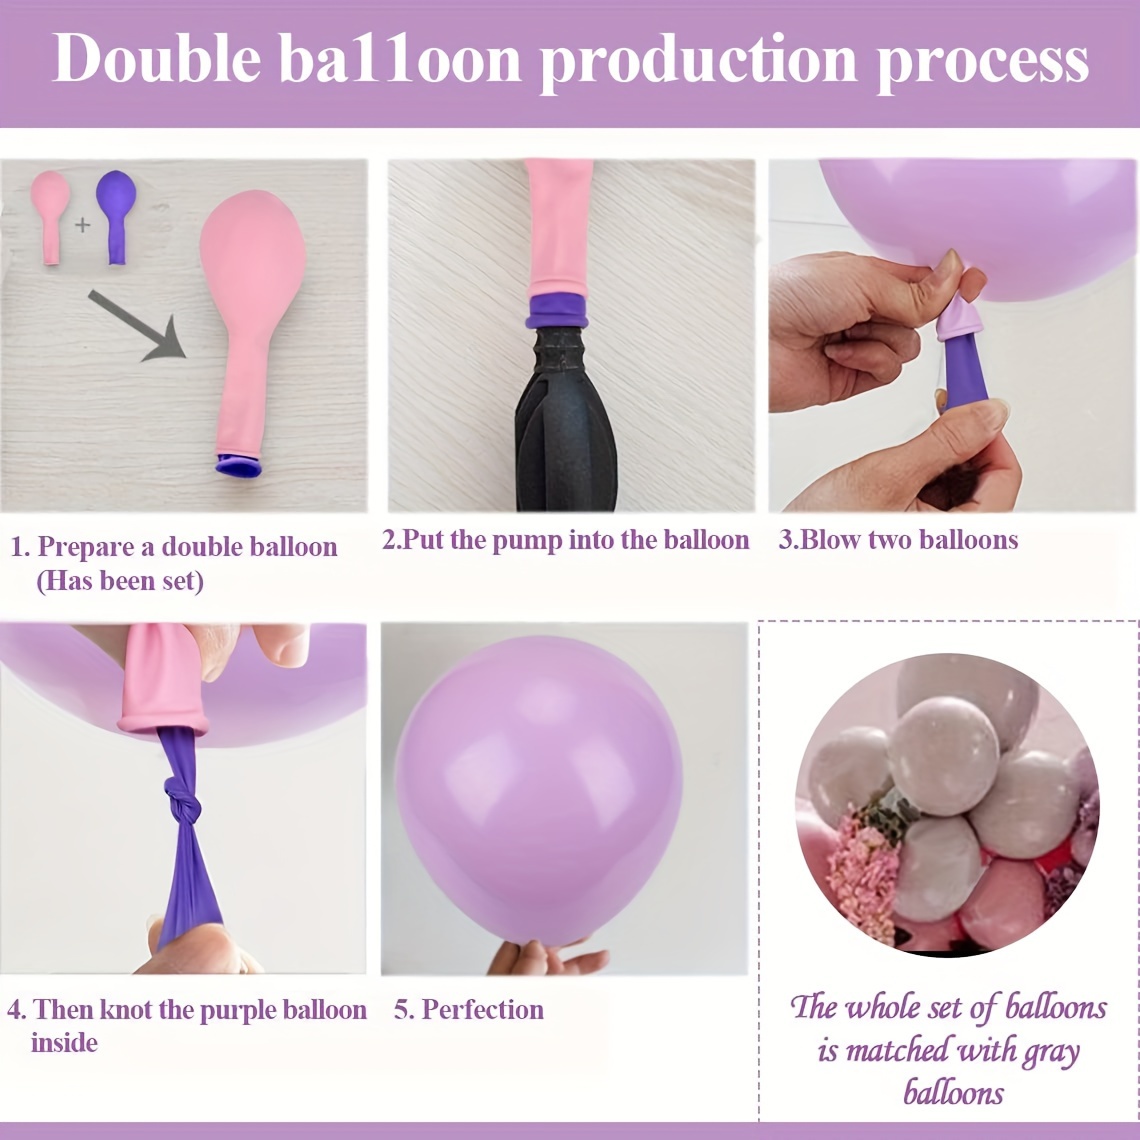 10x Ballon à gonfler violet